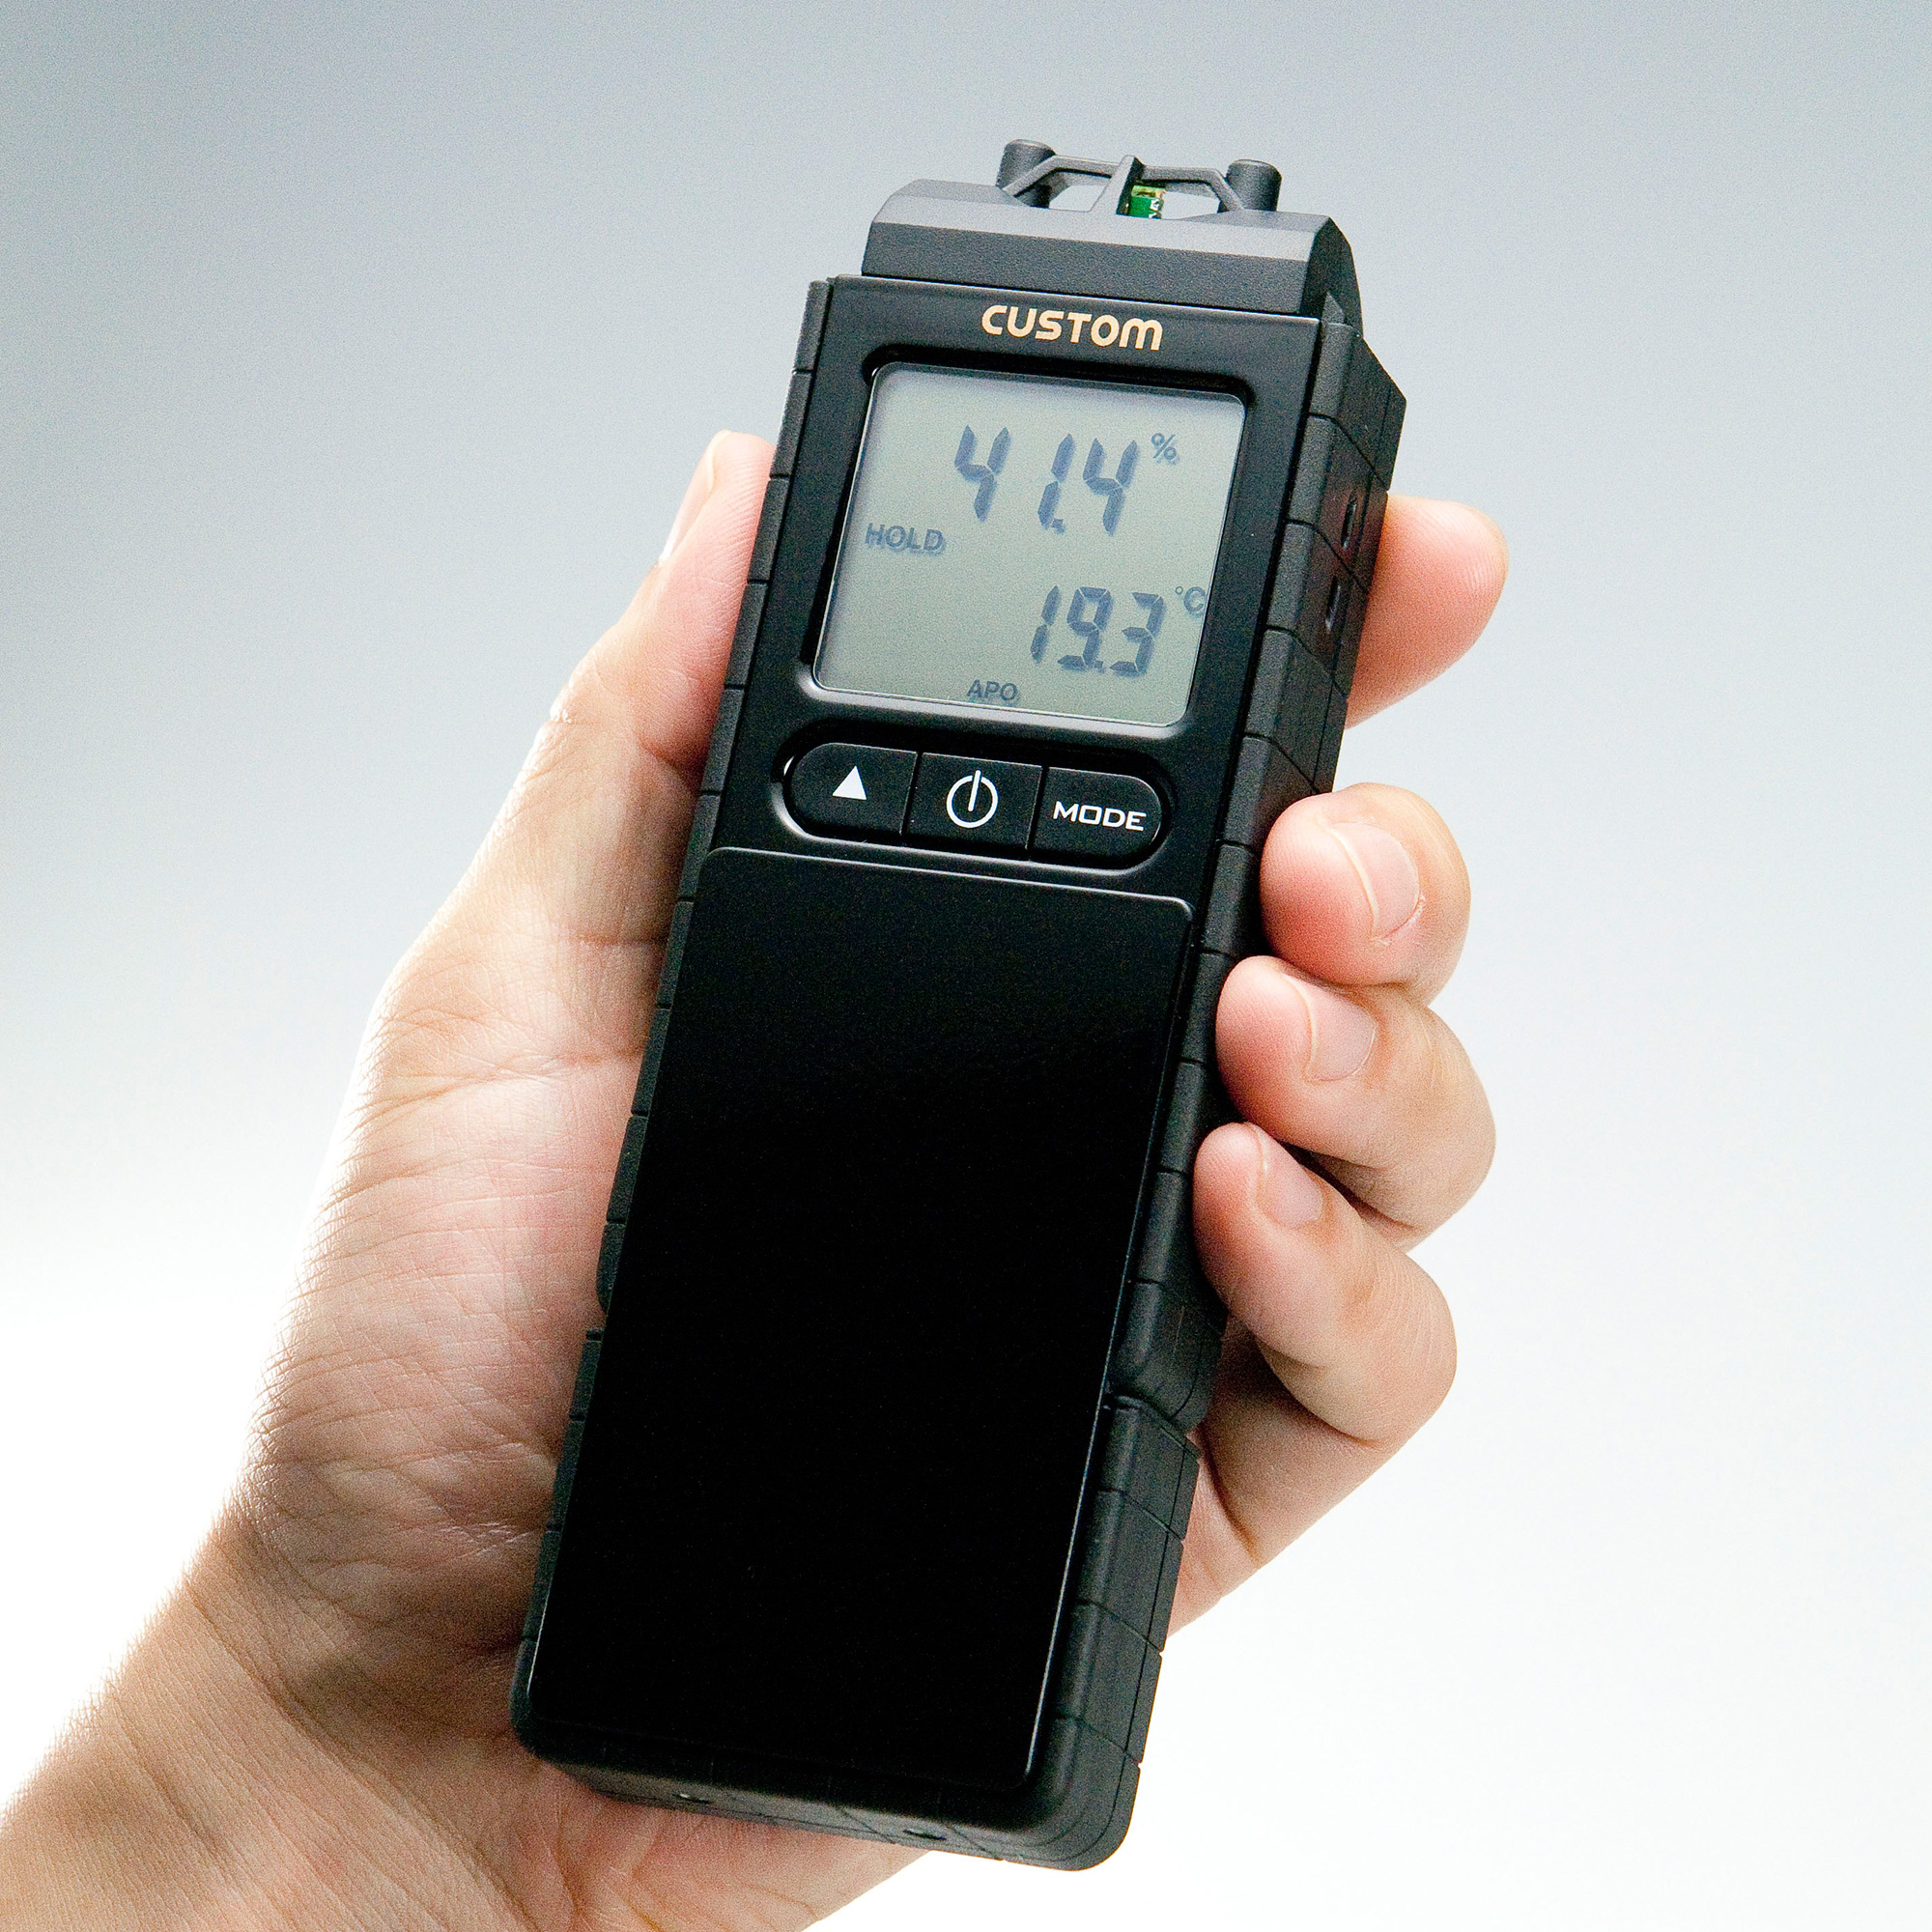 デジタル温湿度計 CTH-01U | 温湿度計 - 製品情報 - 計測器のカスタム